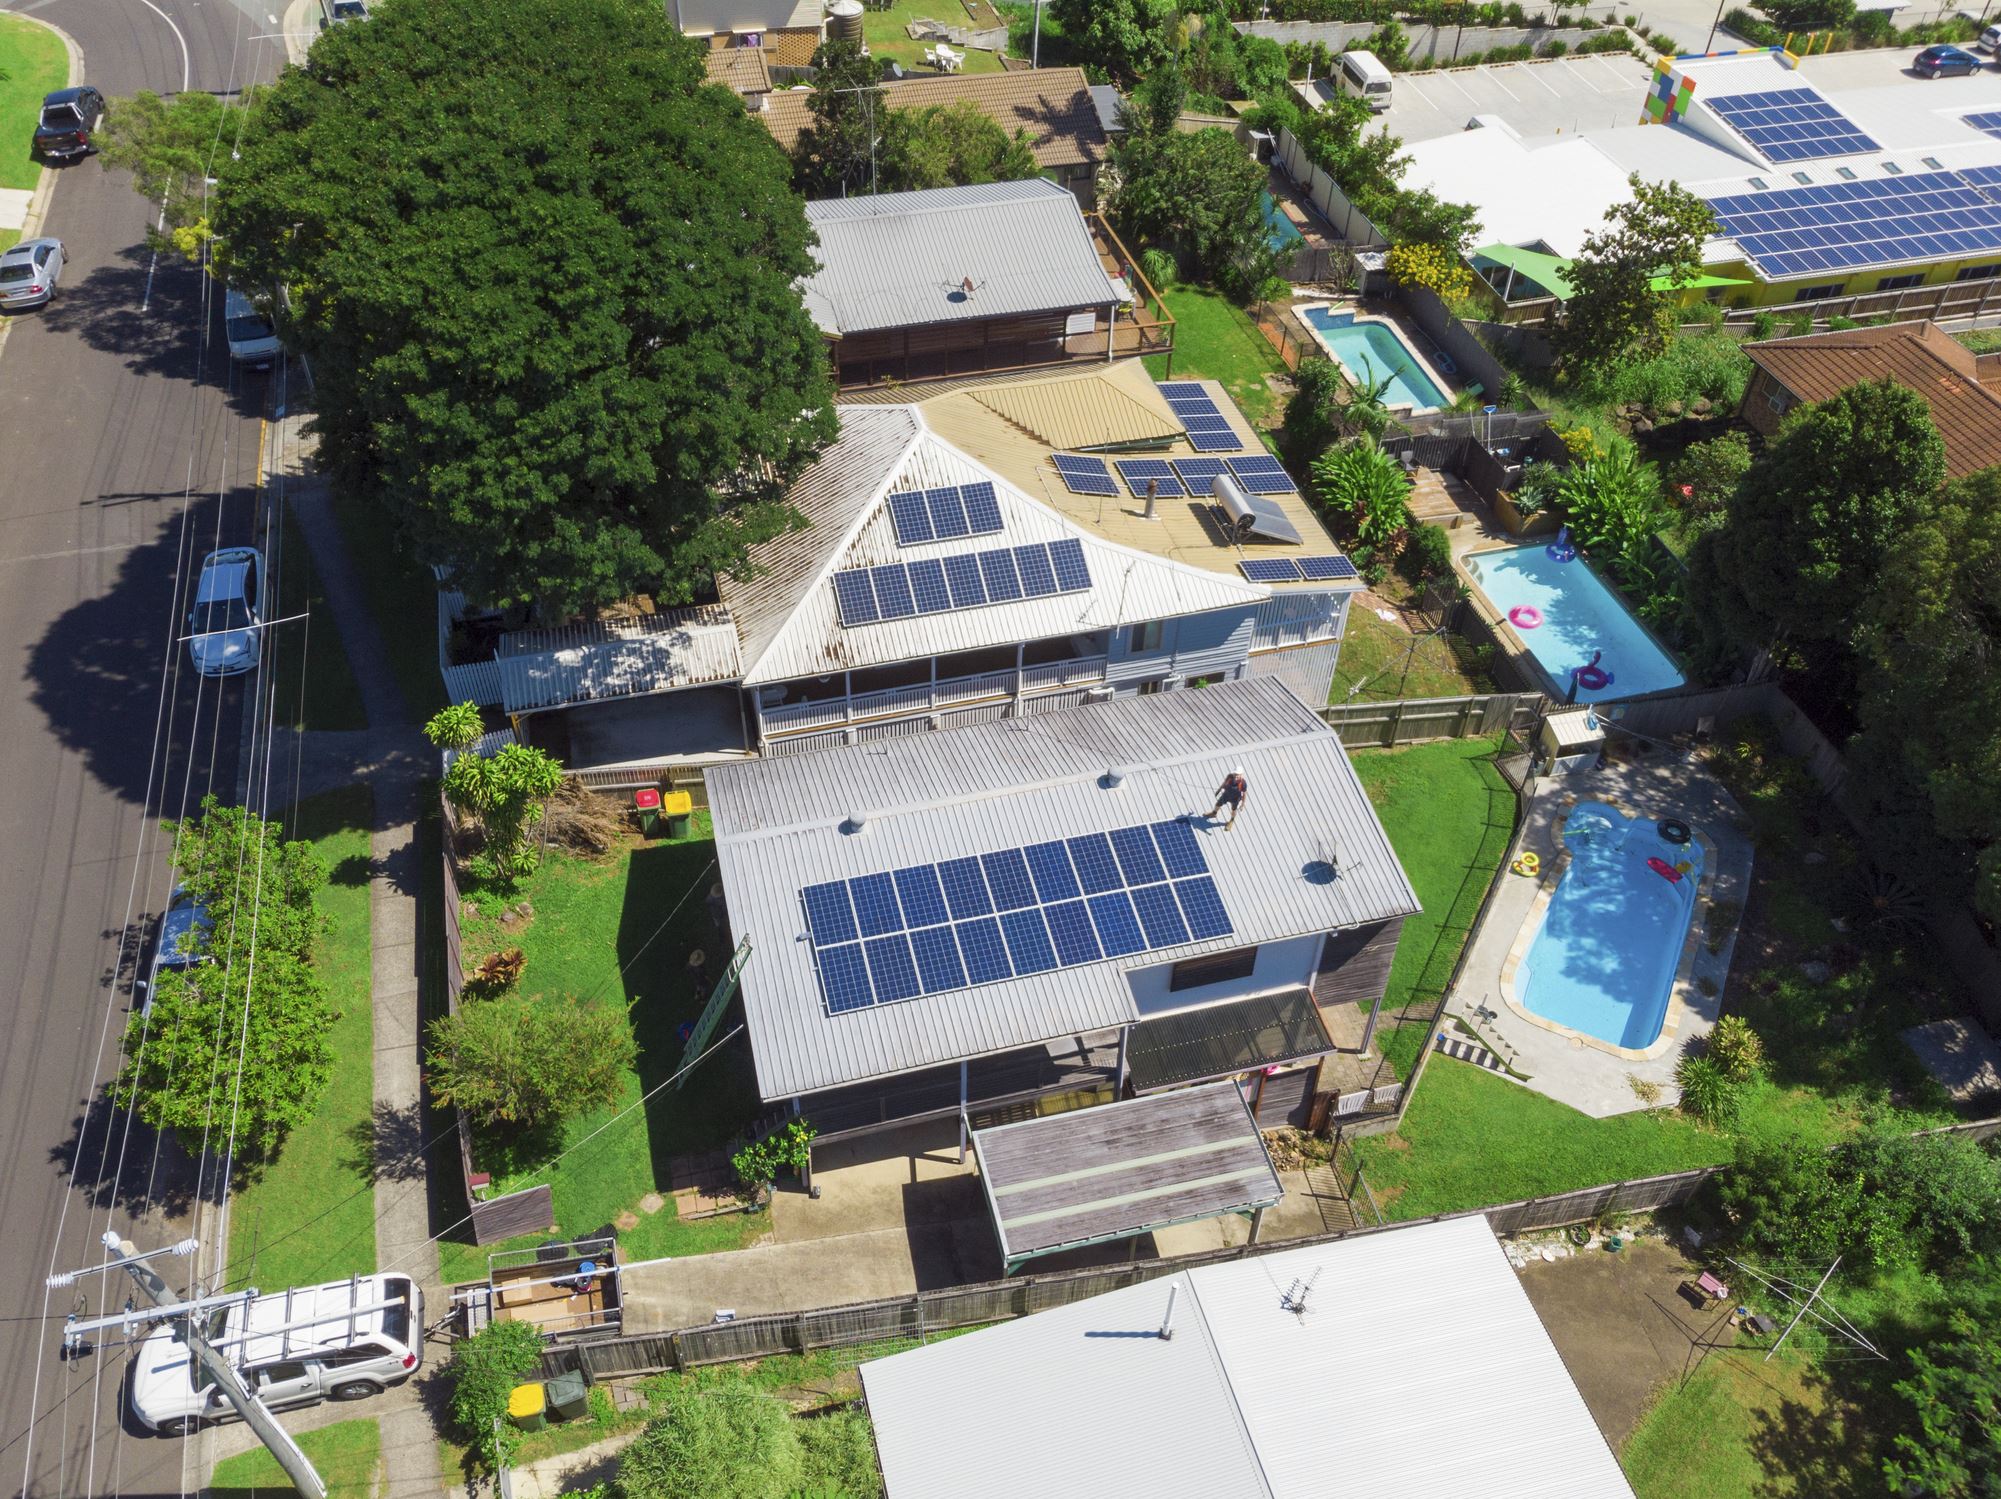 Aerial shot of solar panel installation